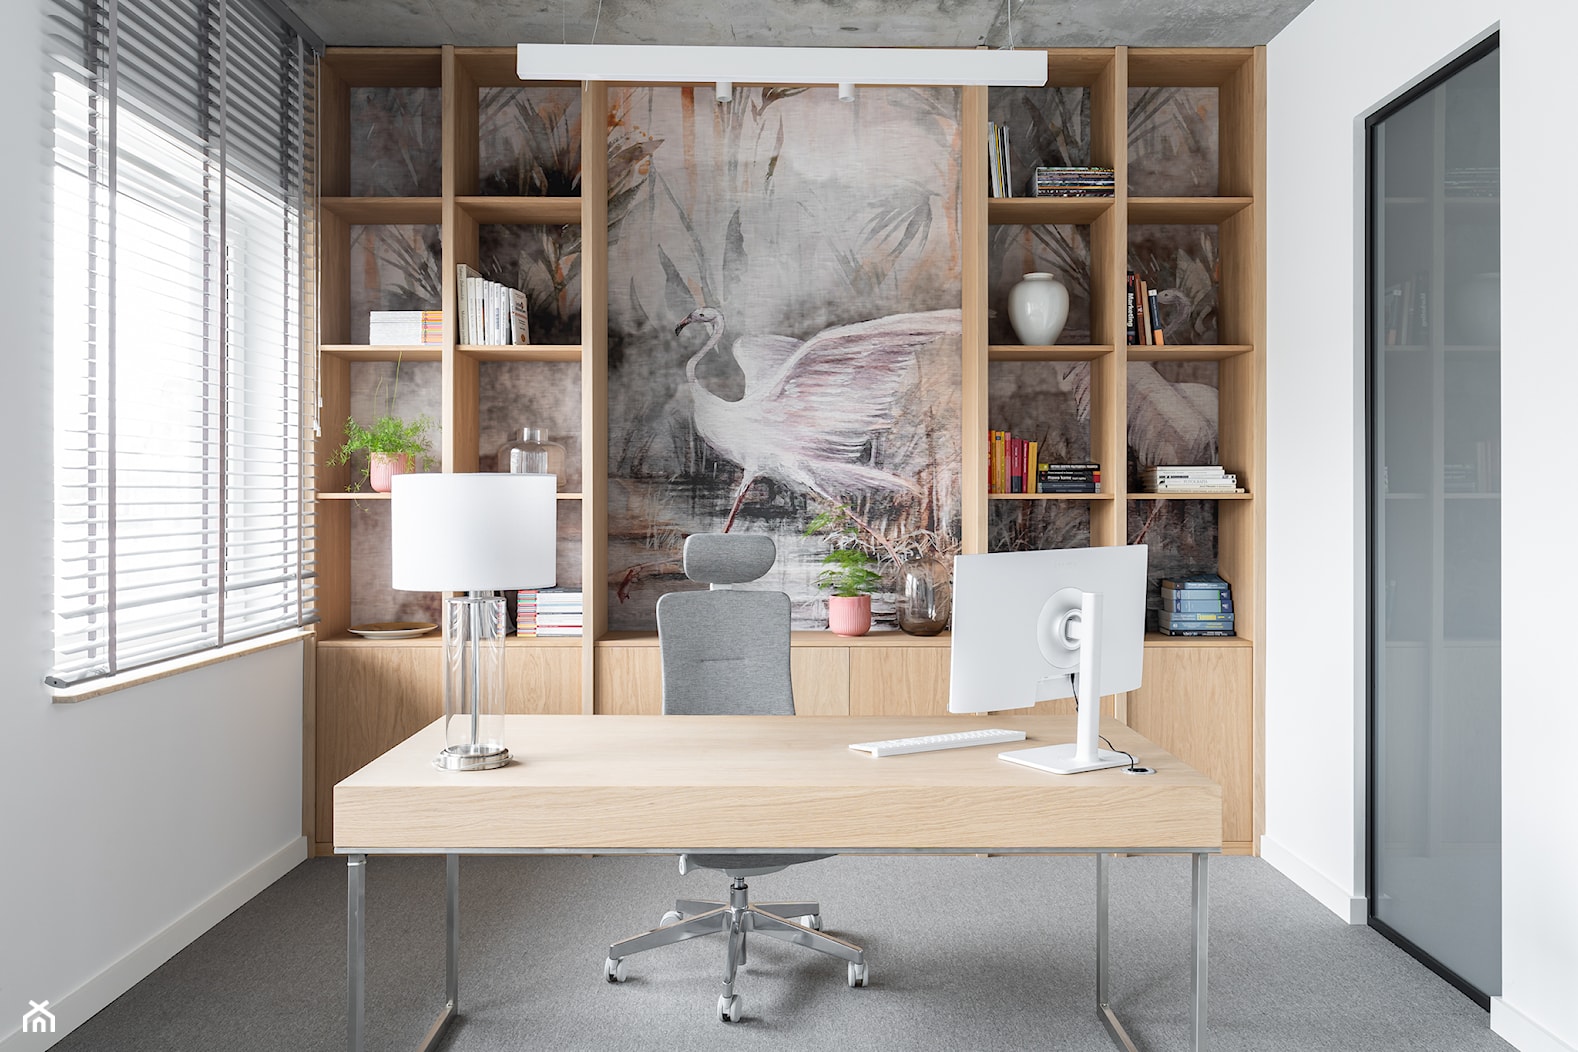 Wyjątkowy projekt przestrzeni biurowej od Darii Przewłóckiej Wnętrza - Biuro - zdjęcie od INKADR Natalia Kaczmarek - Homebook